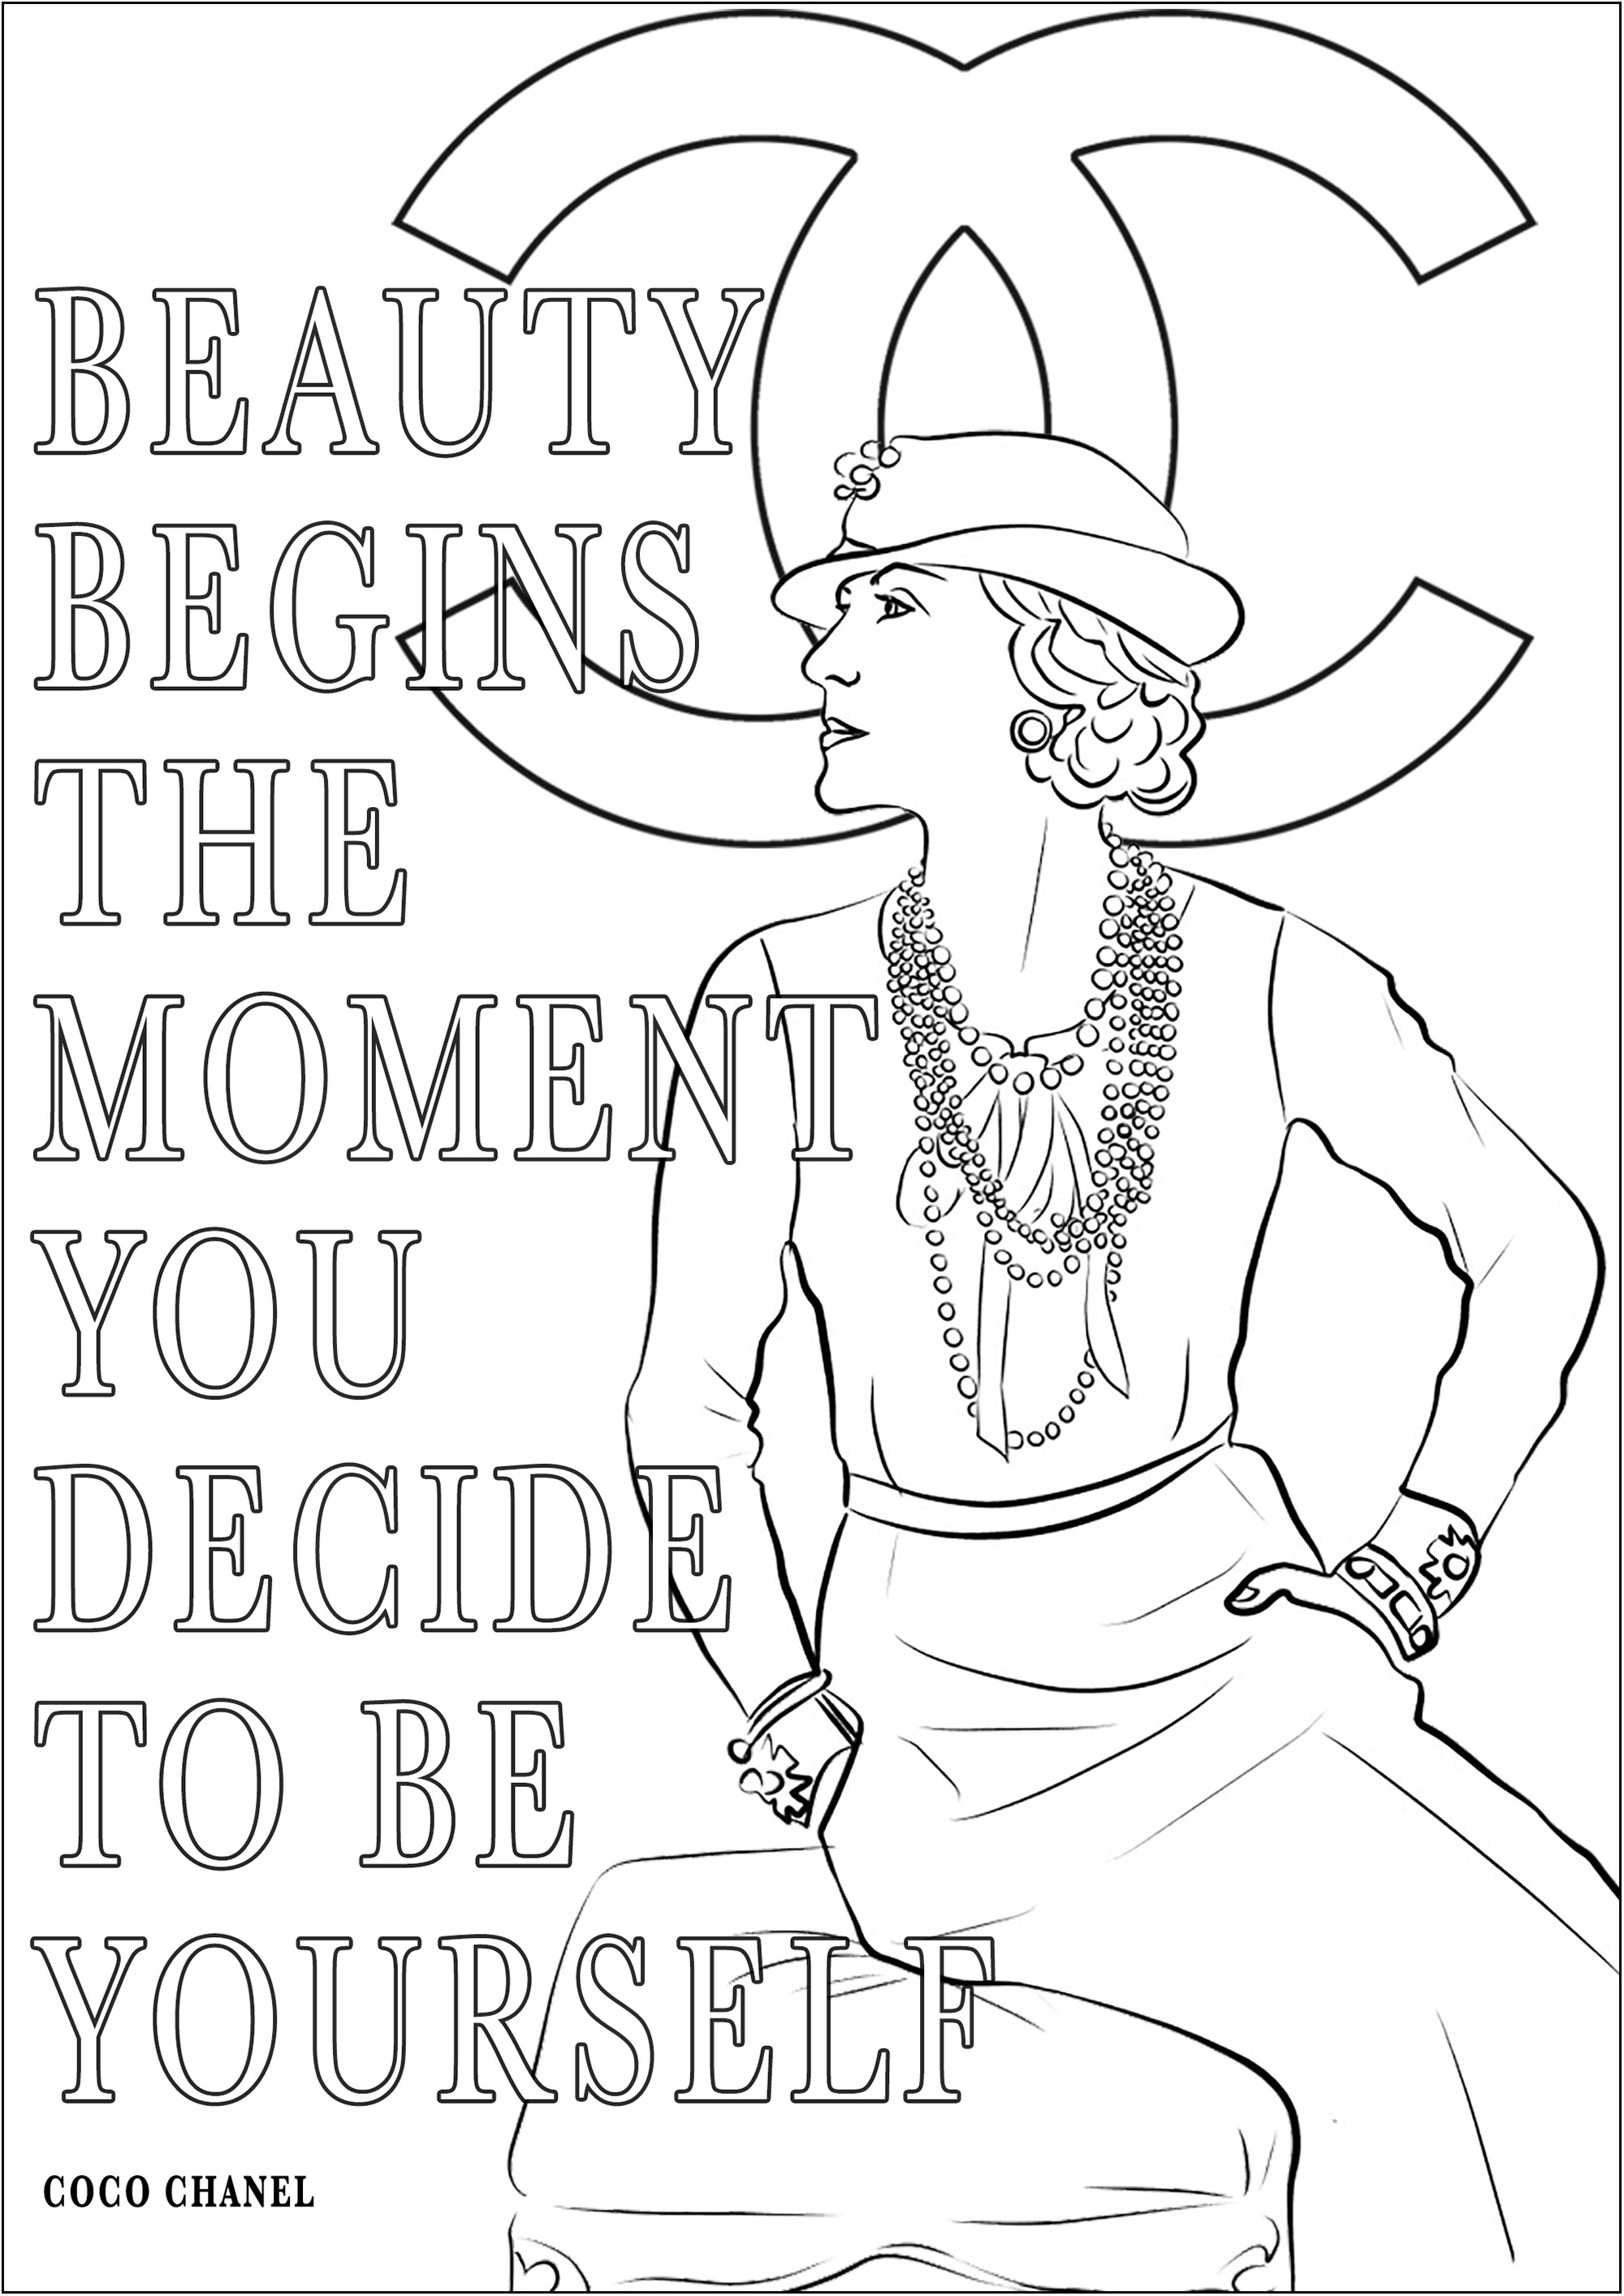 Coco Chanel e la sua citazione 'La bellezza inizia nel momento in cui si decide di essere se stessi'. Significa 'La bellezza inizia nel momento in cui si decide di essere se stessi'.Coco Chanel, nata nel 1883, è stata una rivoluzionaria stilista francese che ha trasformato il settore con le sue creazioni senza tempo, come il famoso tailleur Chanel e il tubino nero.